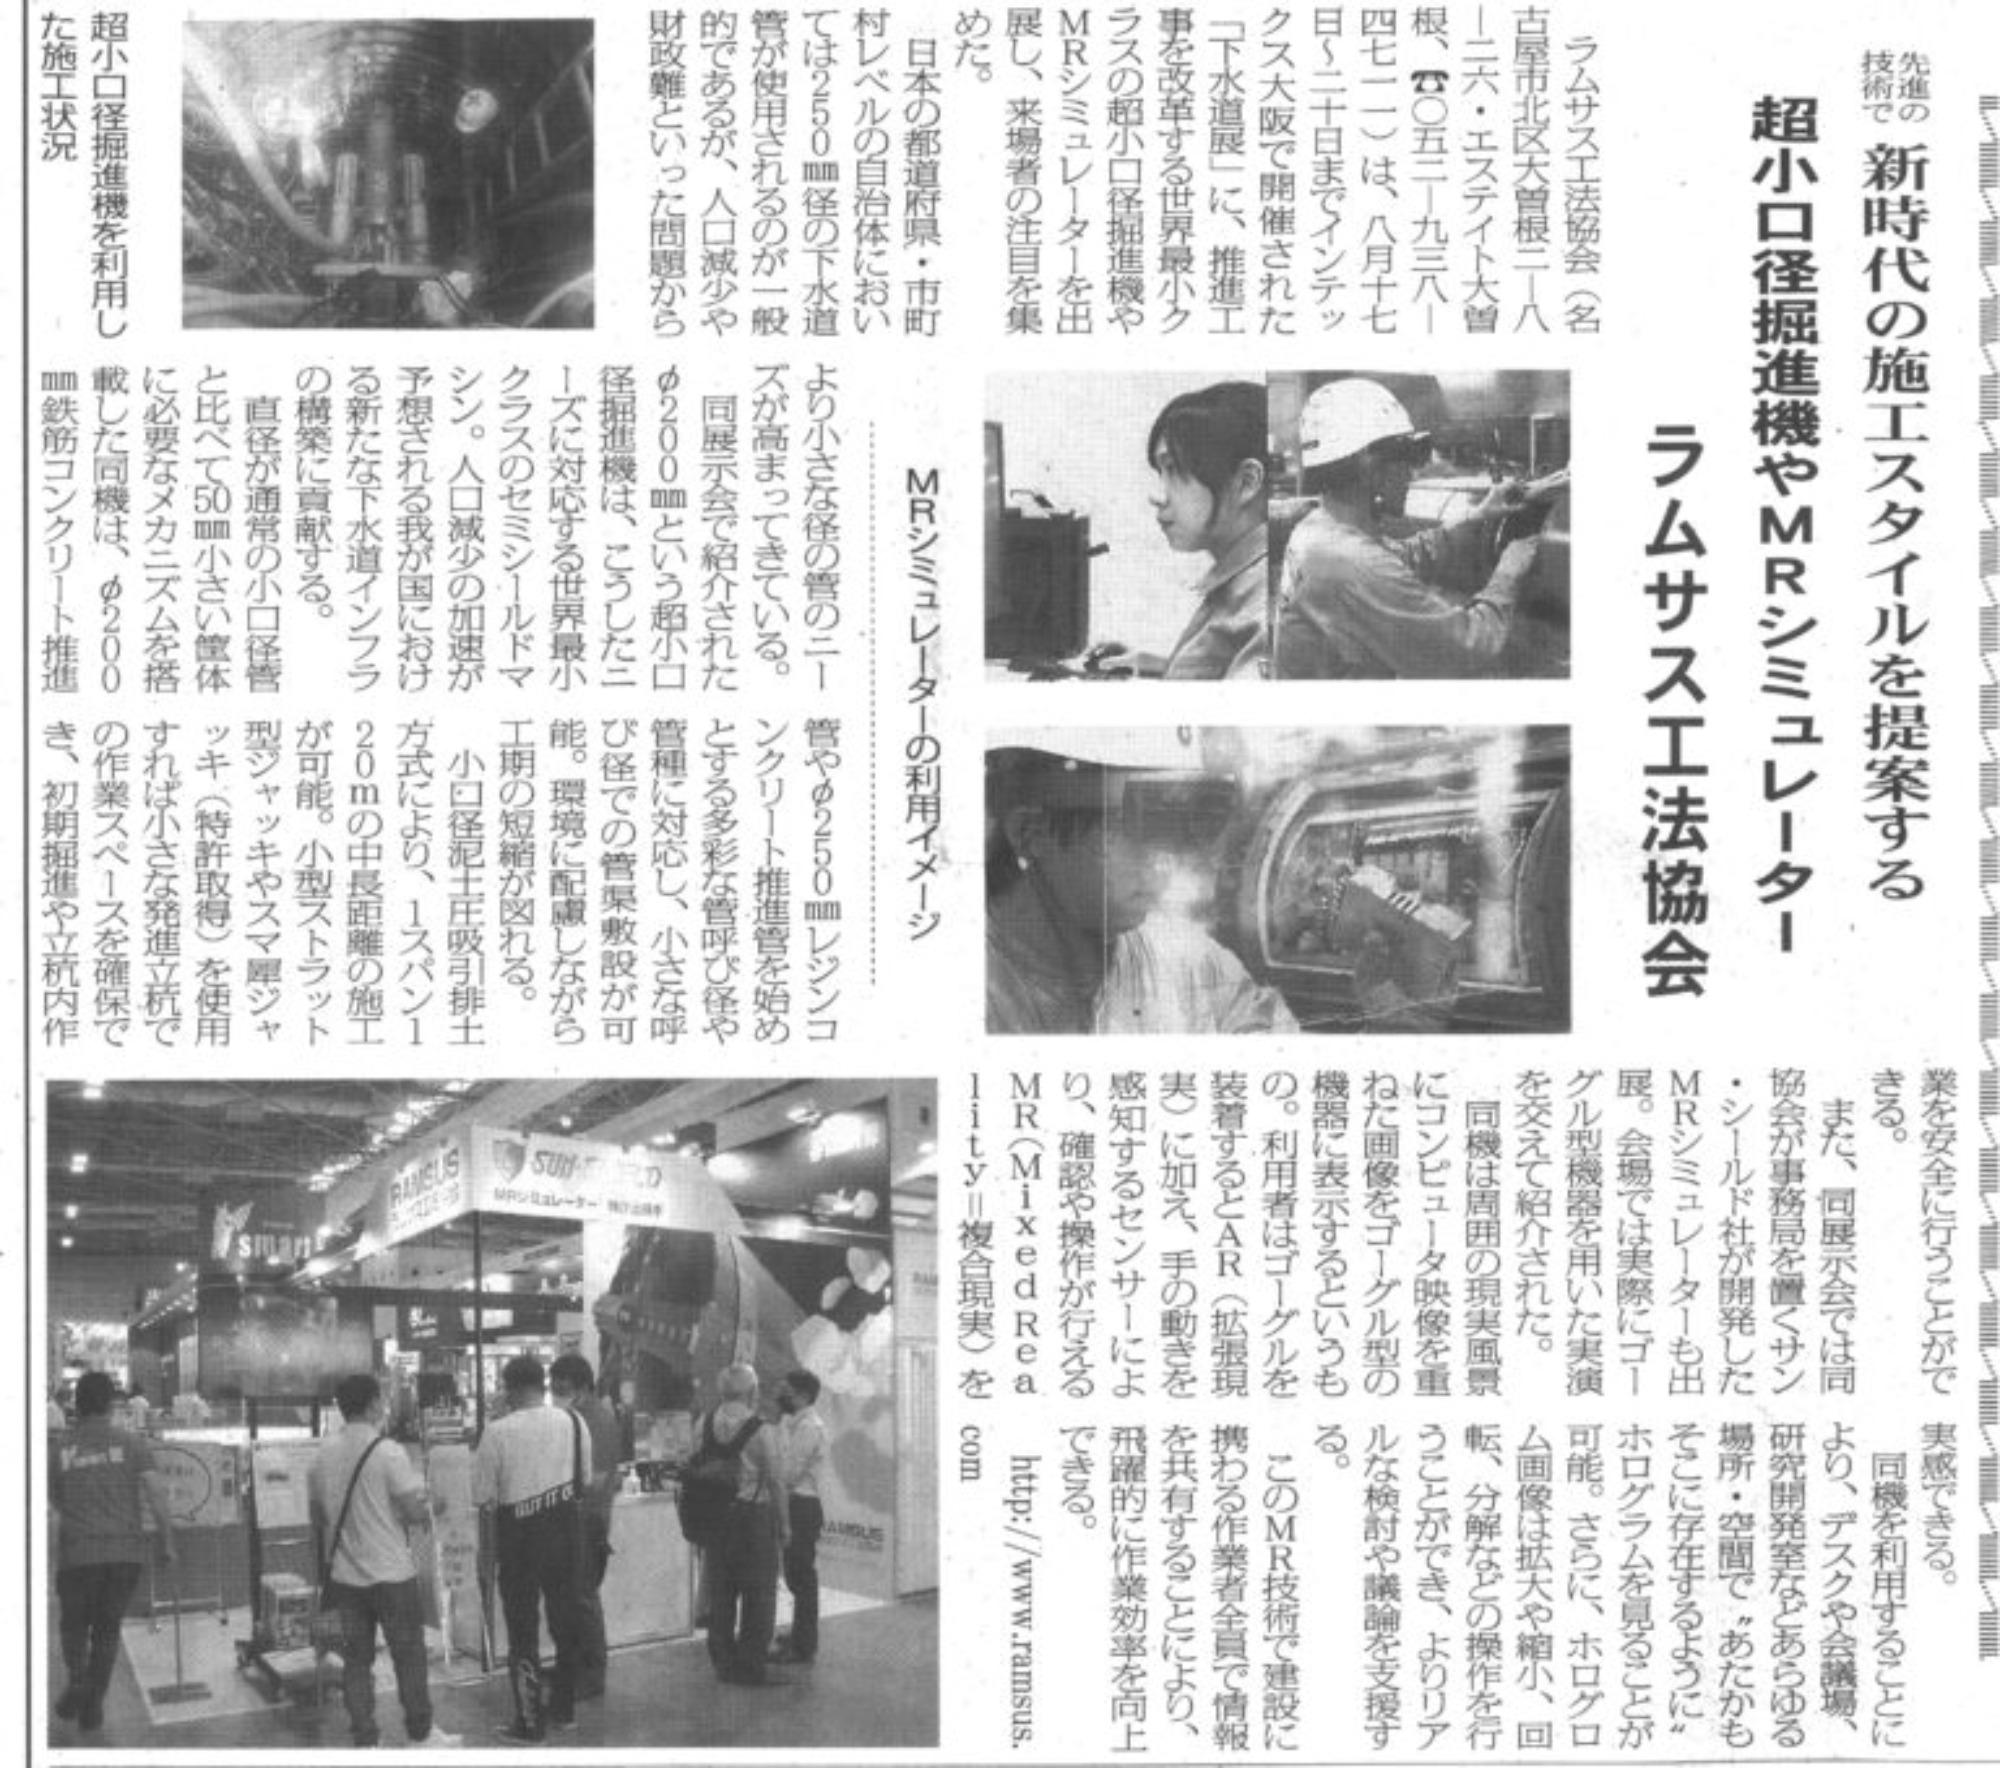 工業技術新聞に記事が掲載されました。